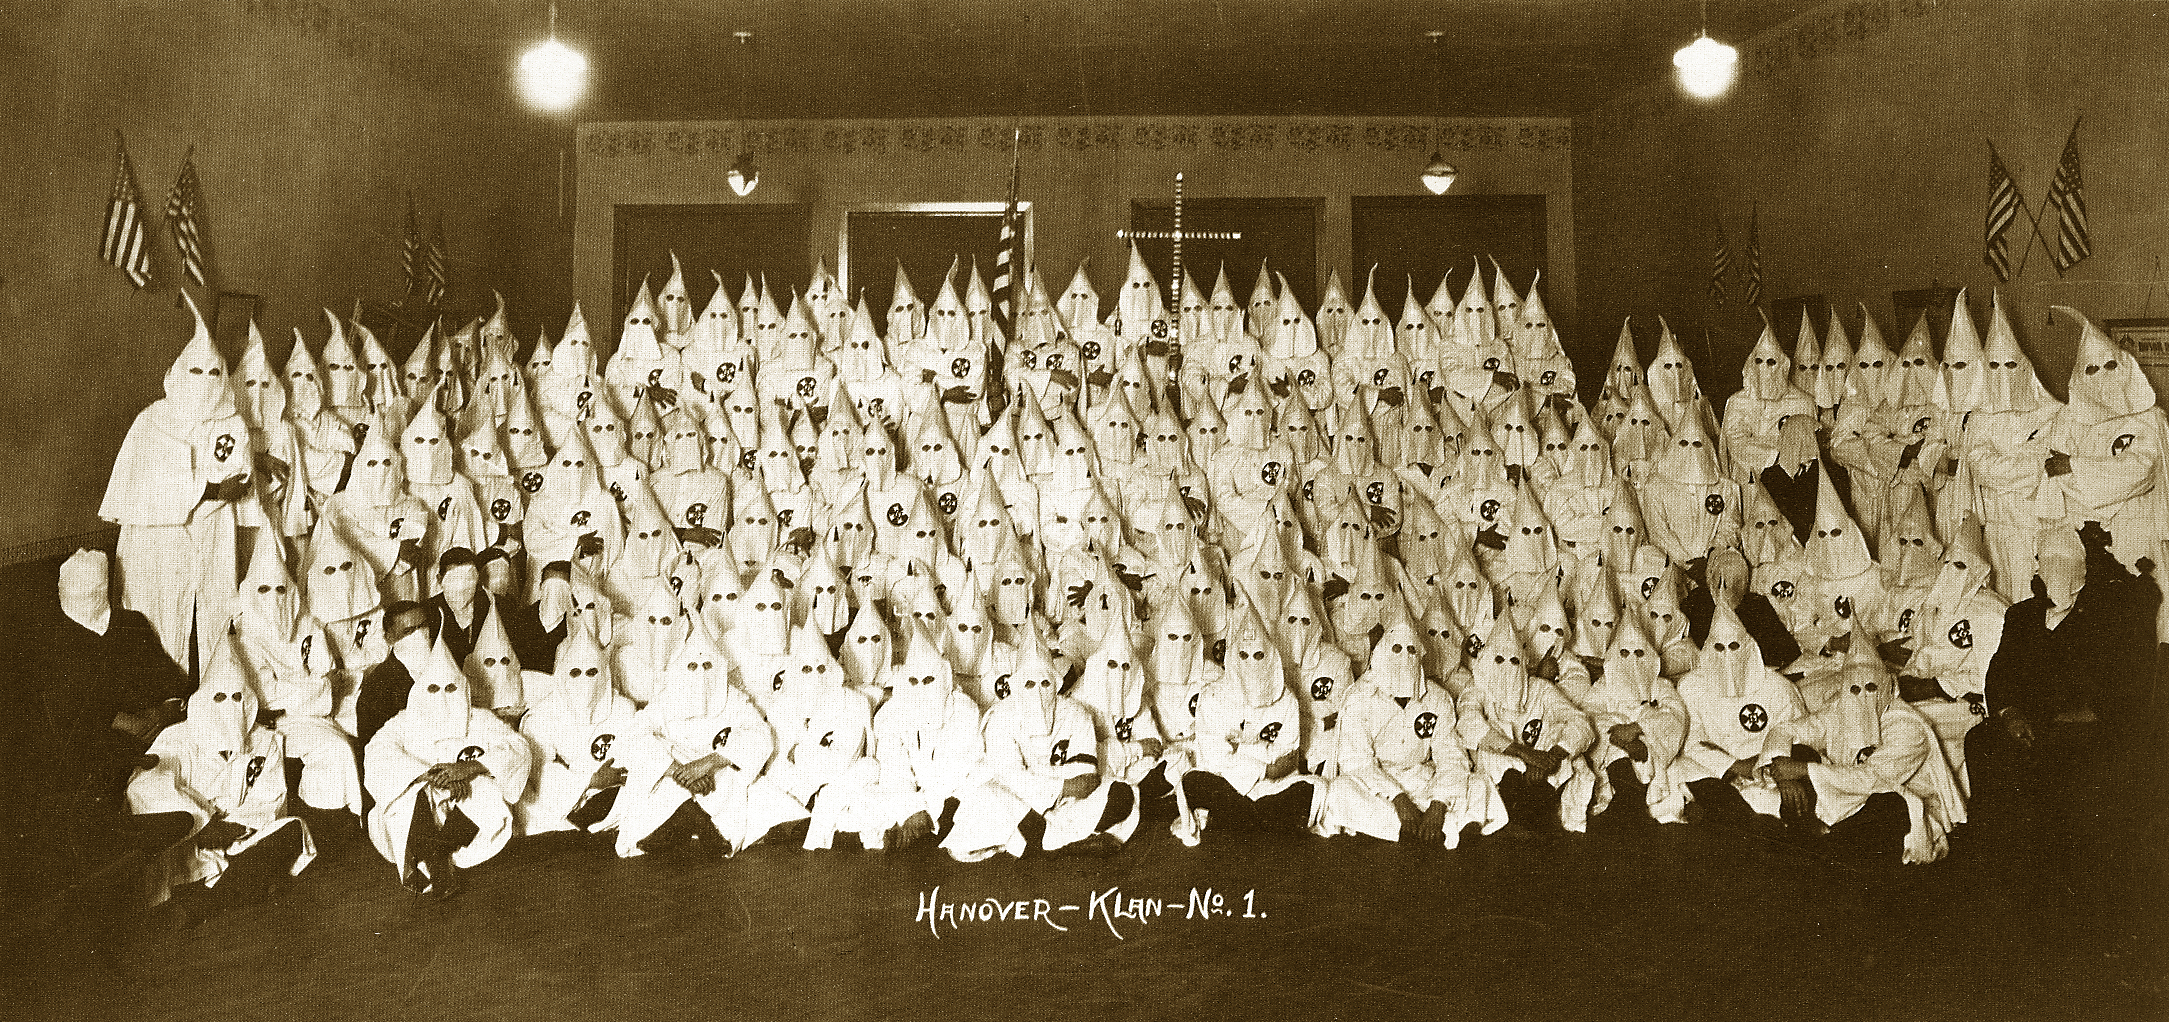 “Hanover - No. 1” (Ku Klux Klan), 1924